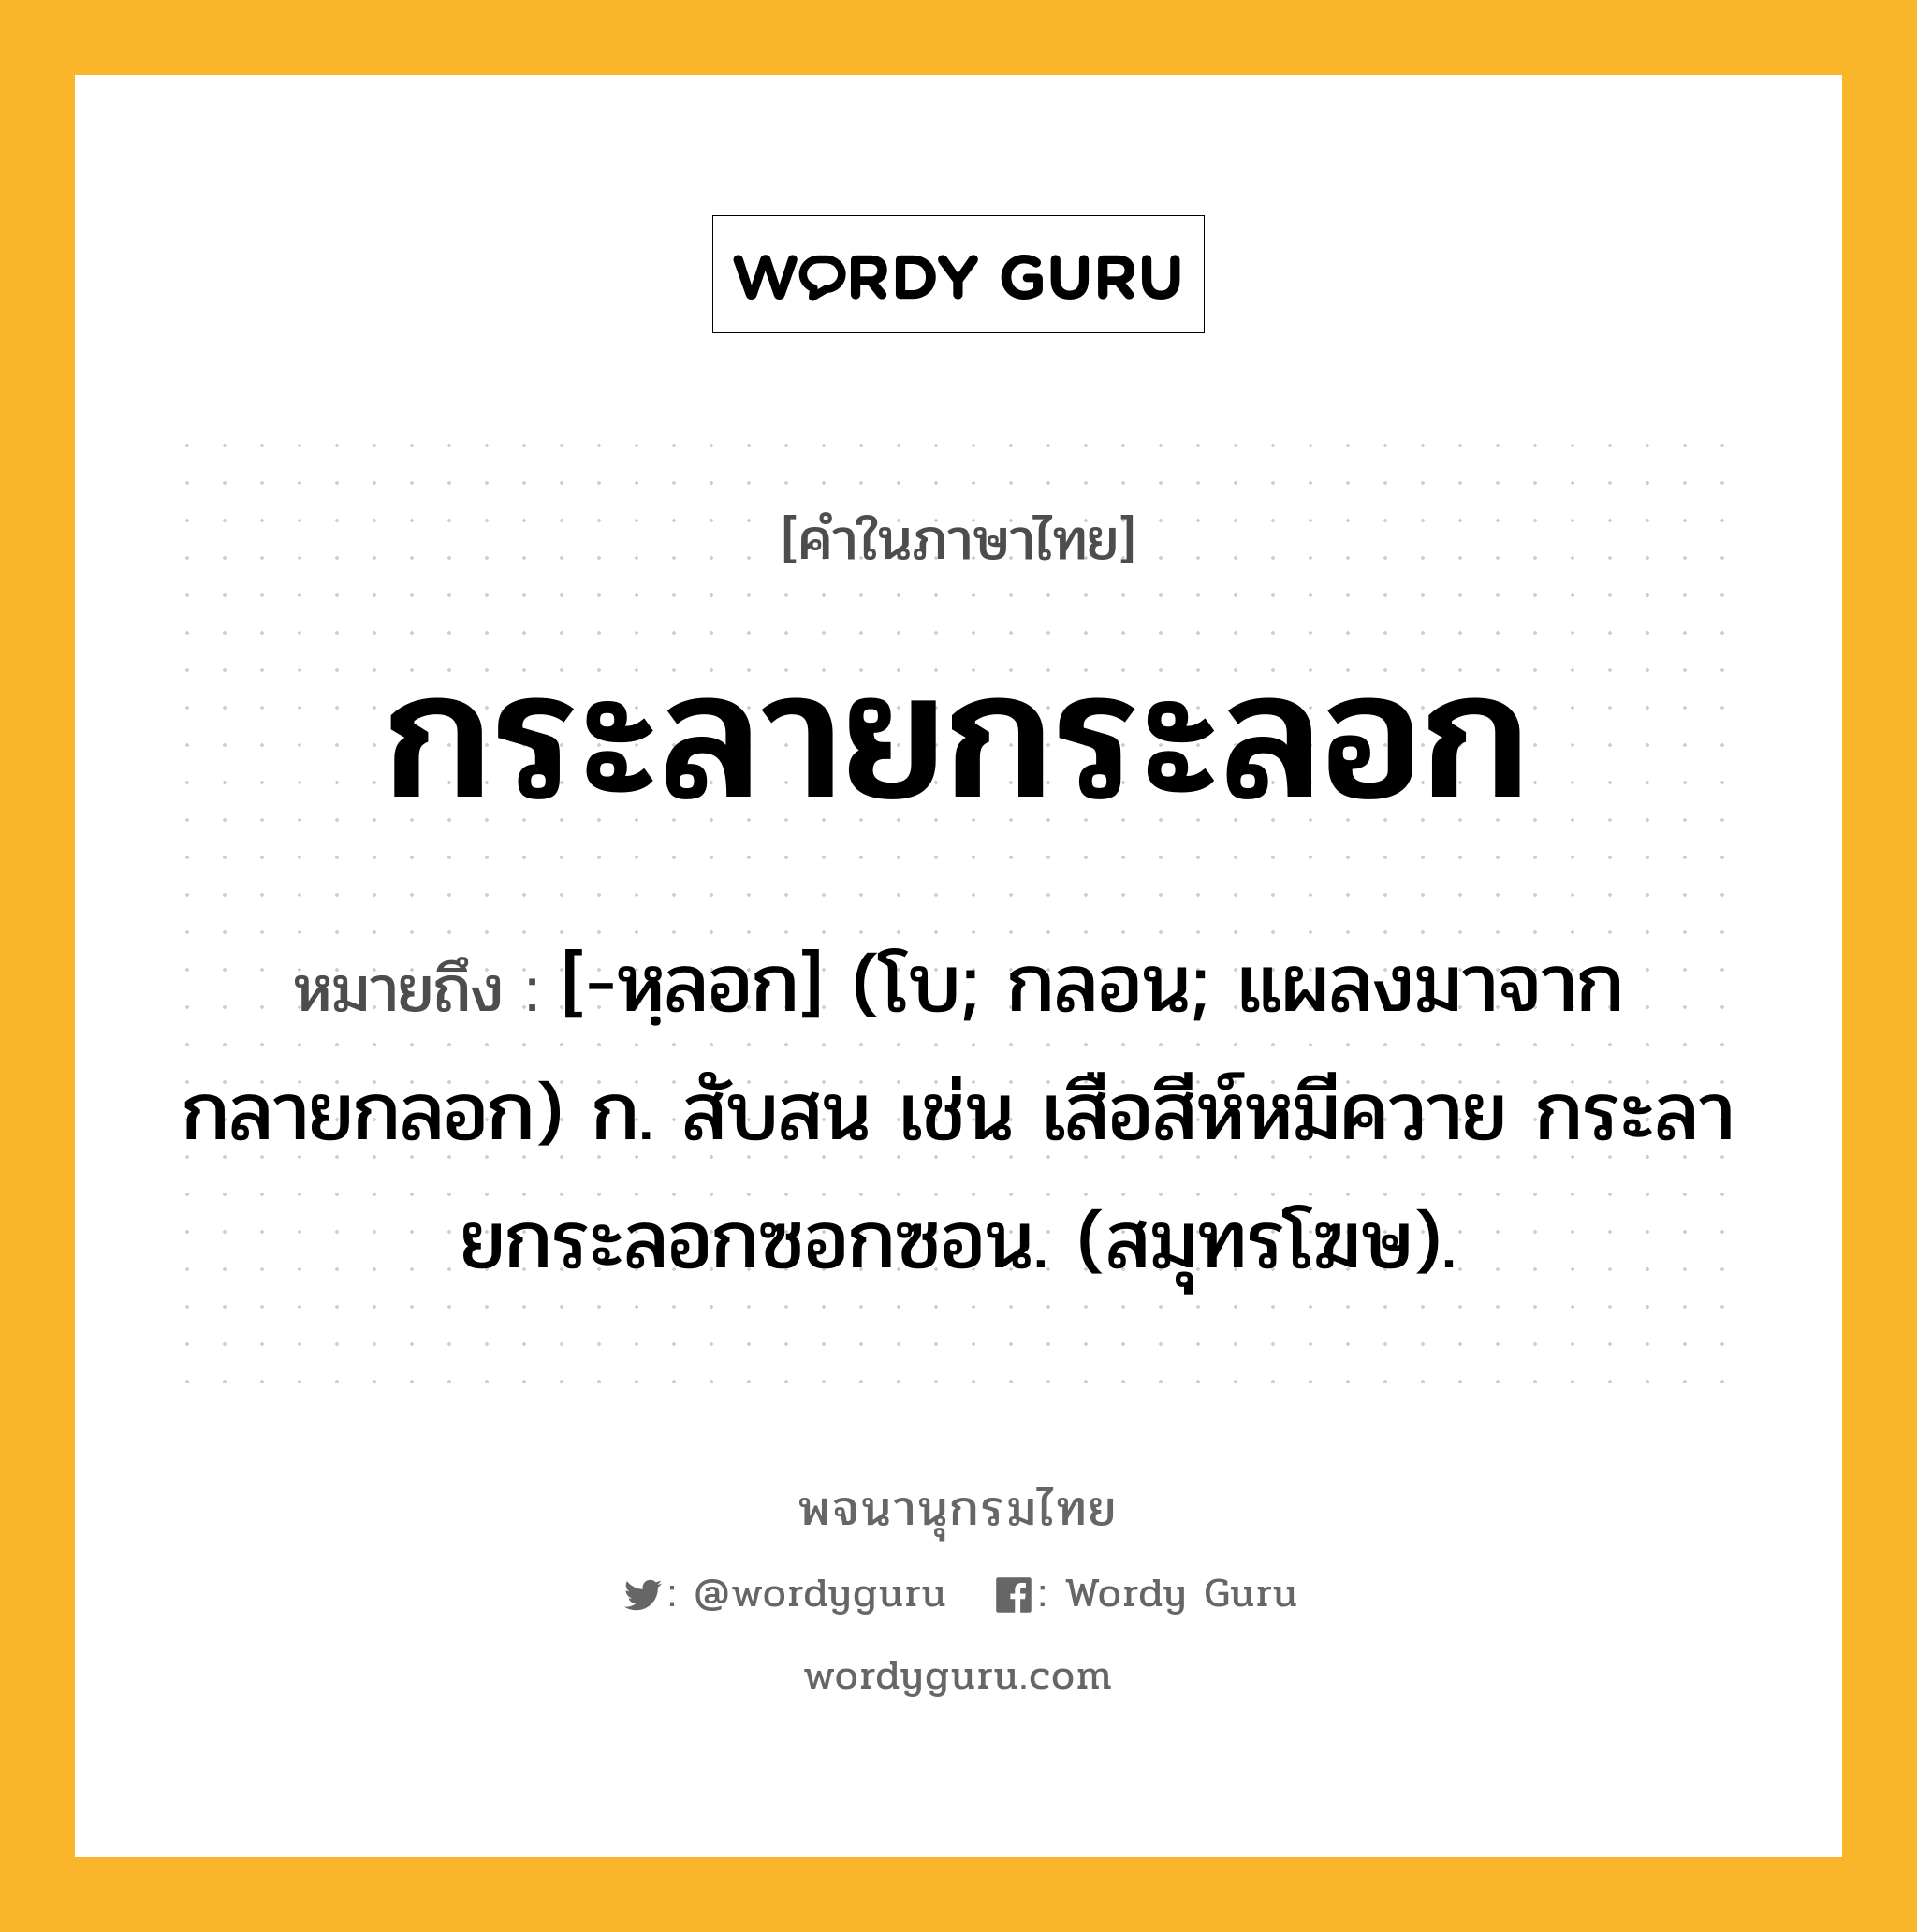 กระลายกระลอก ความหมาย หมายถึงอะไร?, คำในภาษาไทย กระลายกระลอก หมายถึง [-หฺลอก] (โบ; กลอน; แผลงมาจาก กลายกลอก) ก. สับสน เช่น เสือสีห์หมีควาย กระลายกระลอกซอกซอน. (สมุทรโฆษ).